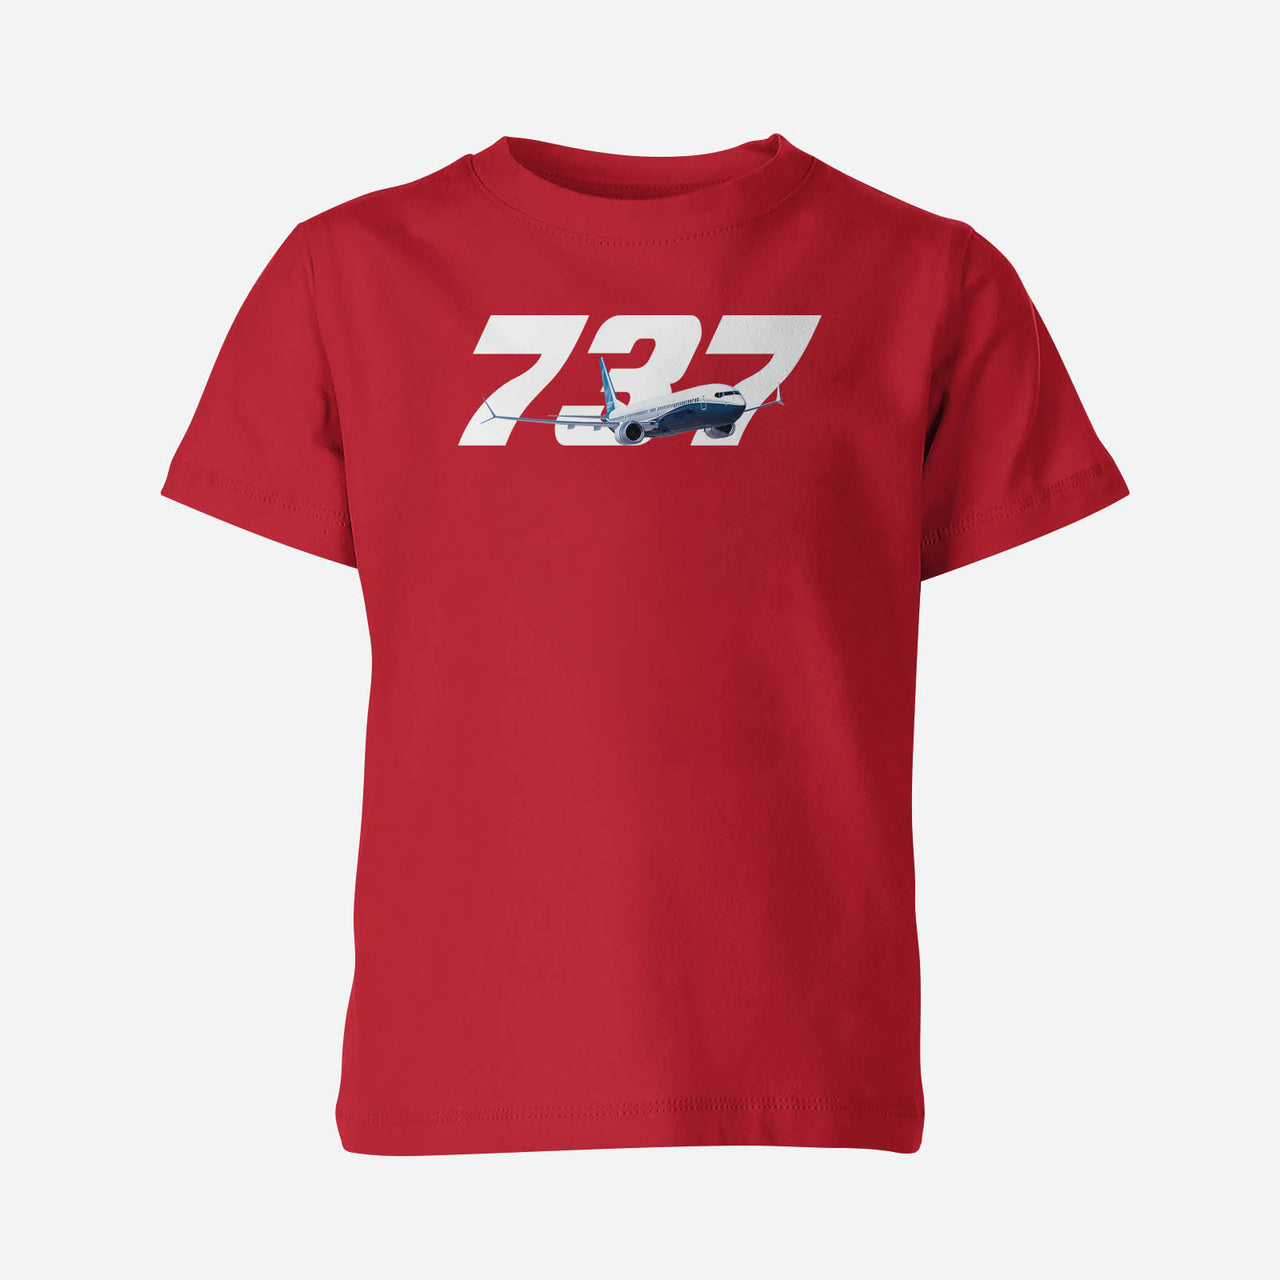 Super Boeing 737 Designed Children T-Shirts